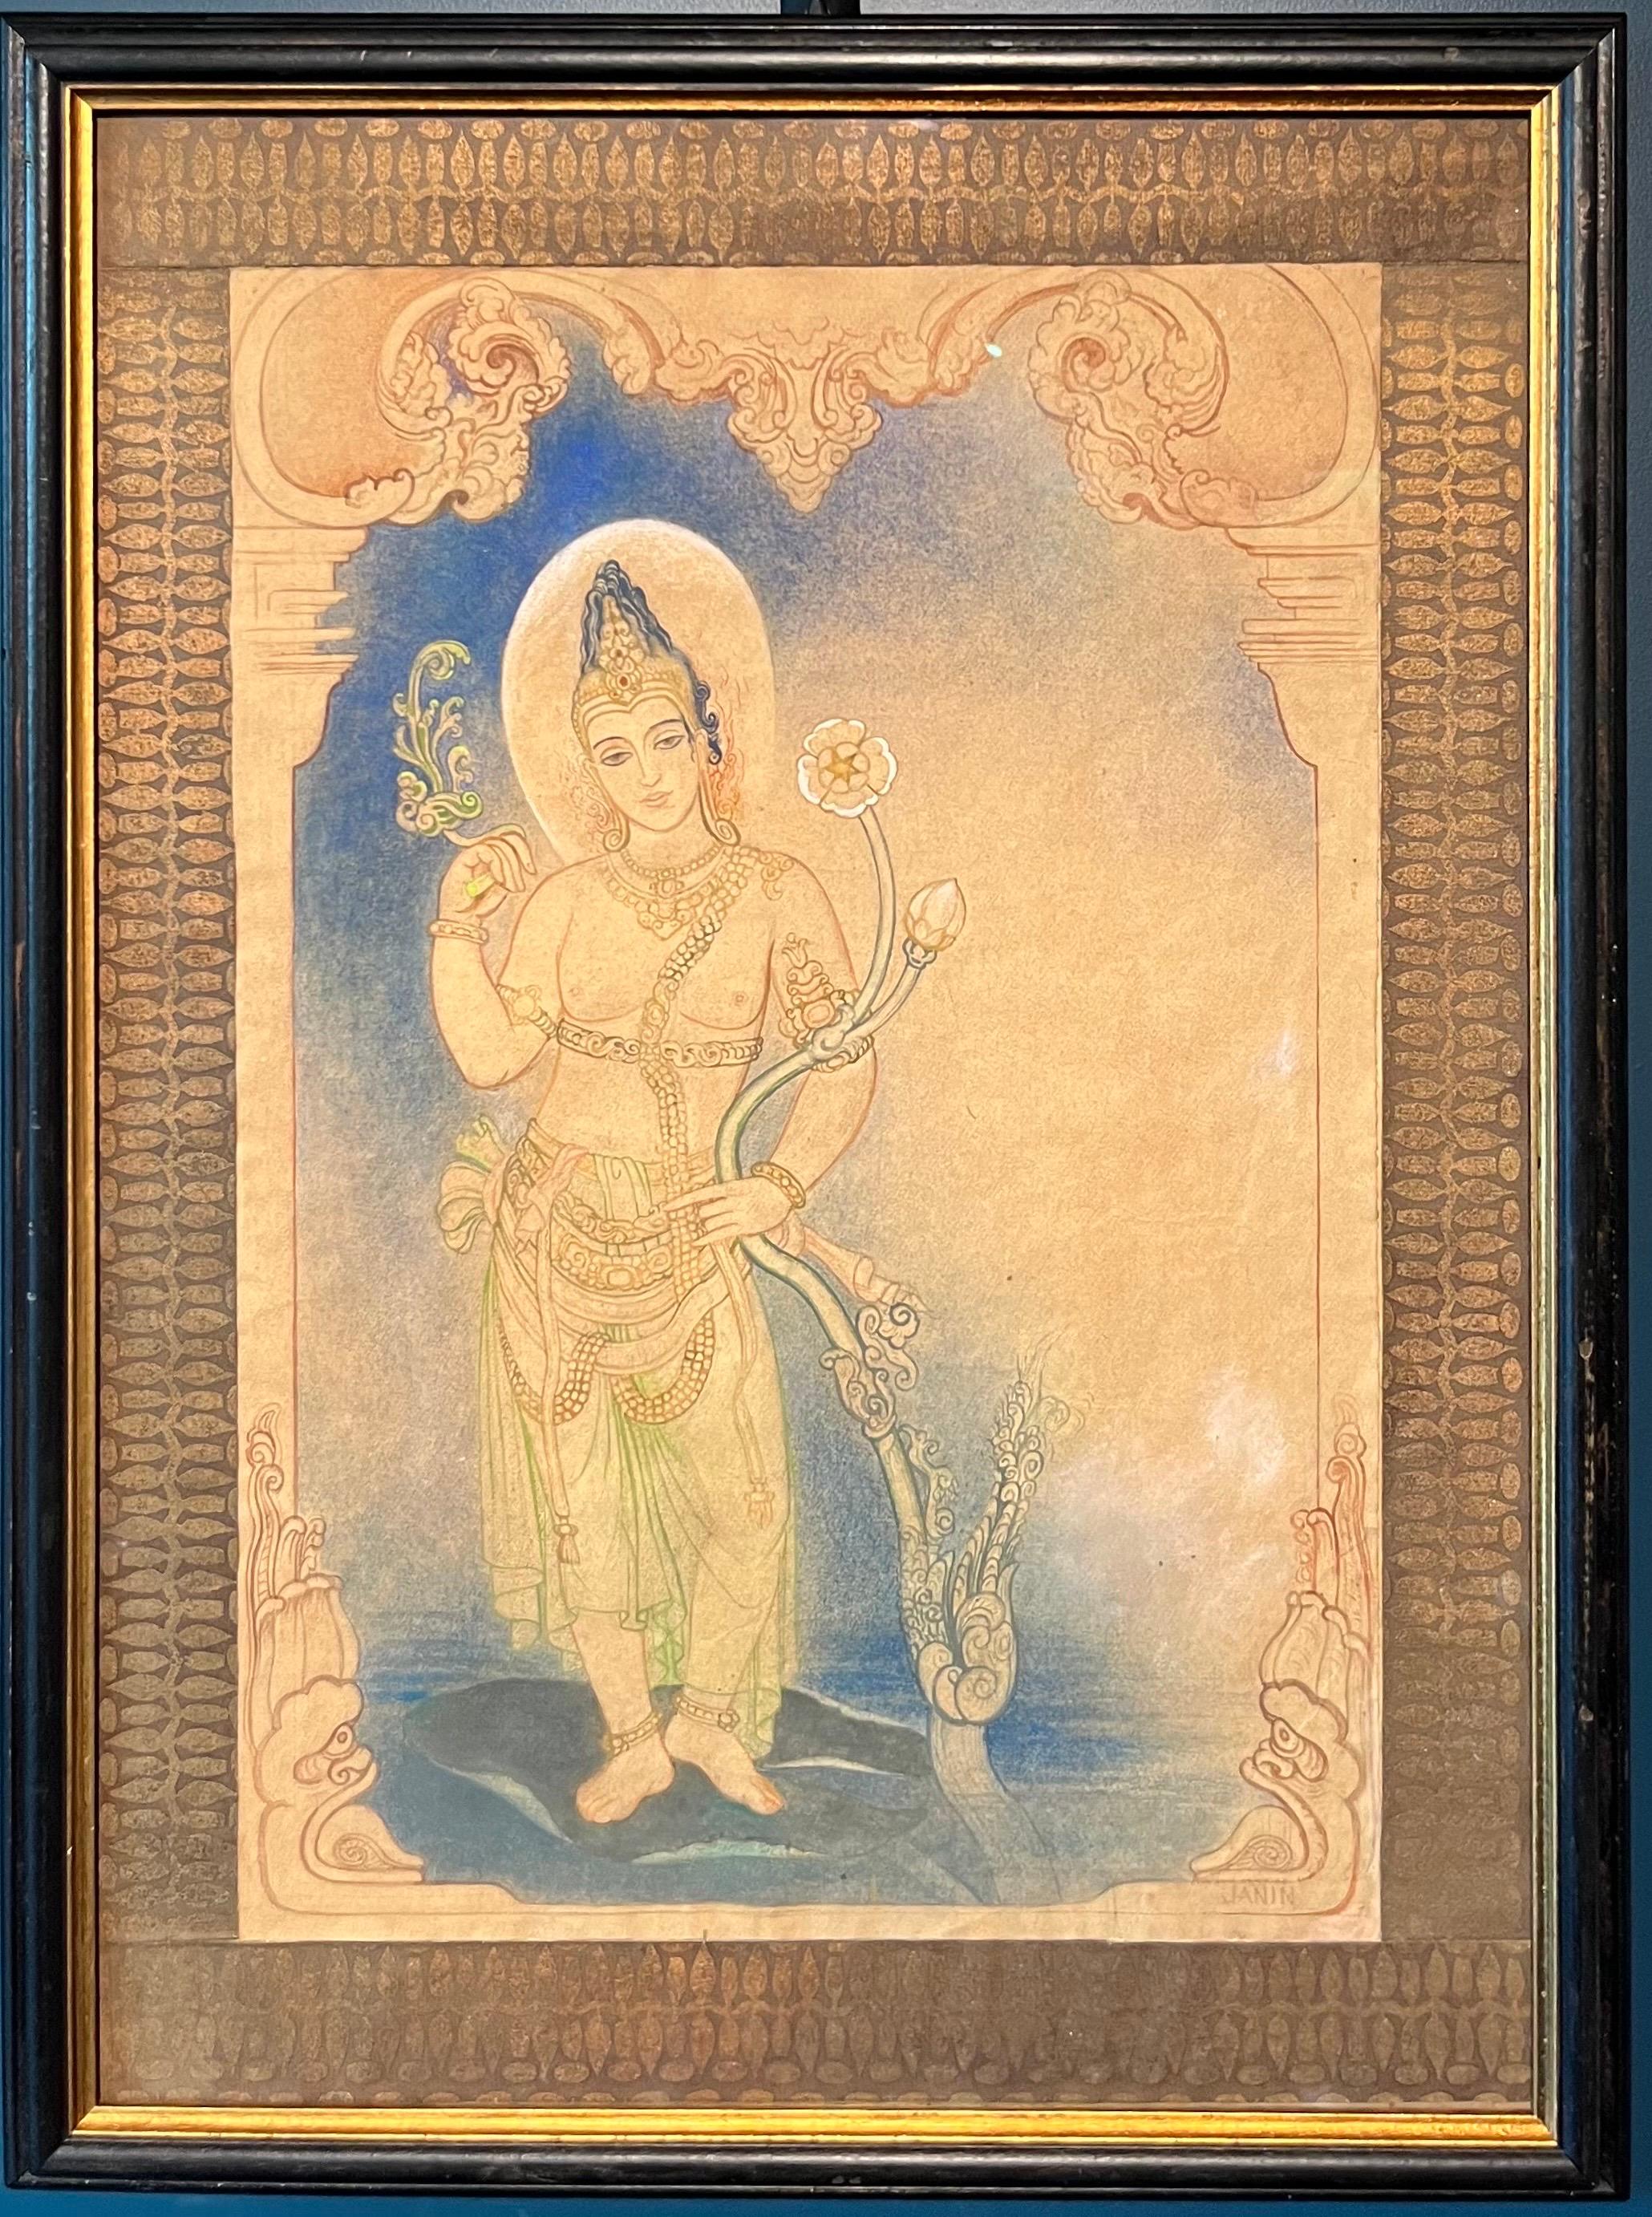 "Divinità induista" Tecnica mista su carta  cm. 48 x 33   1920 ca